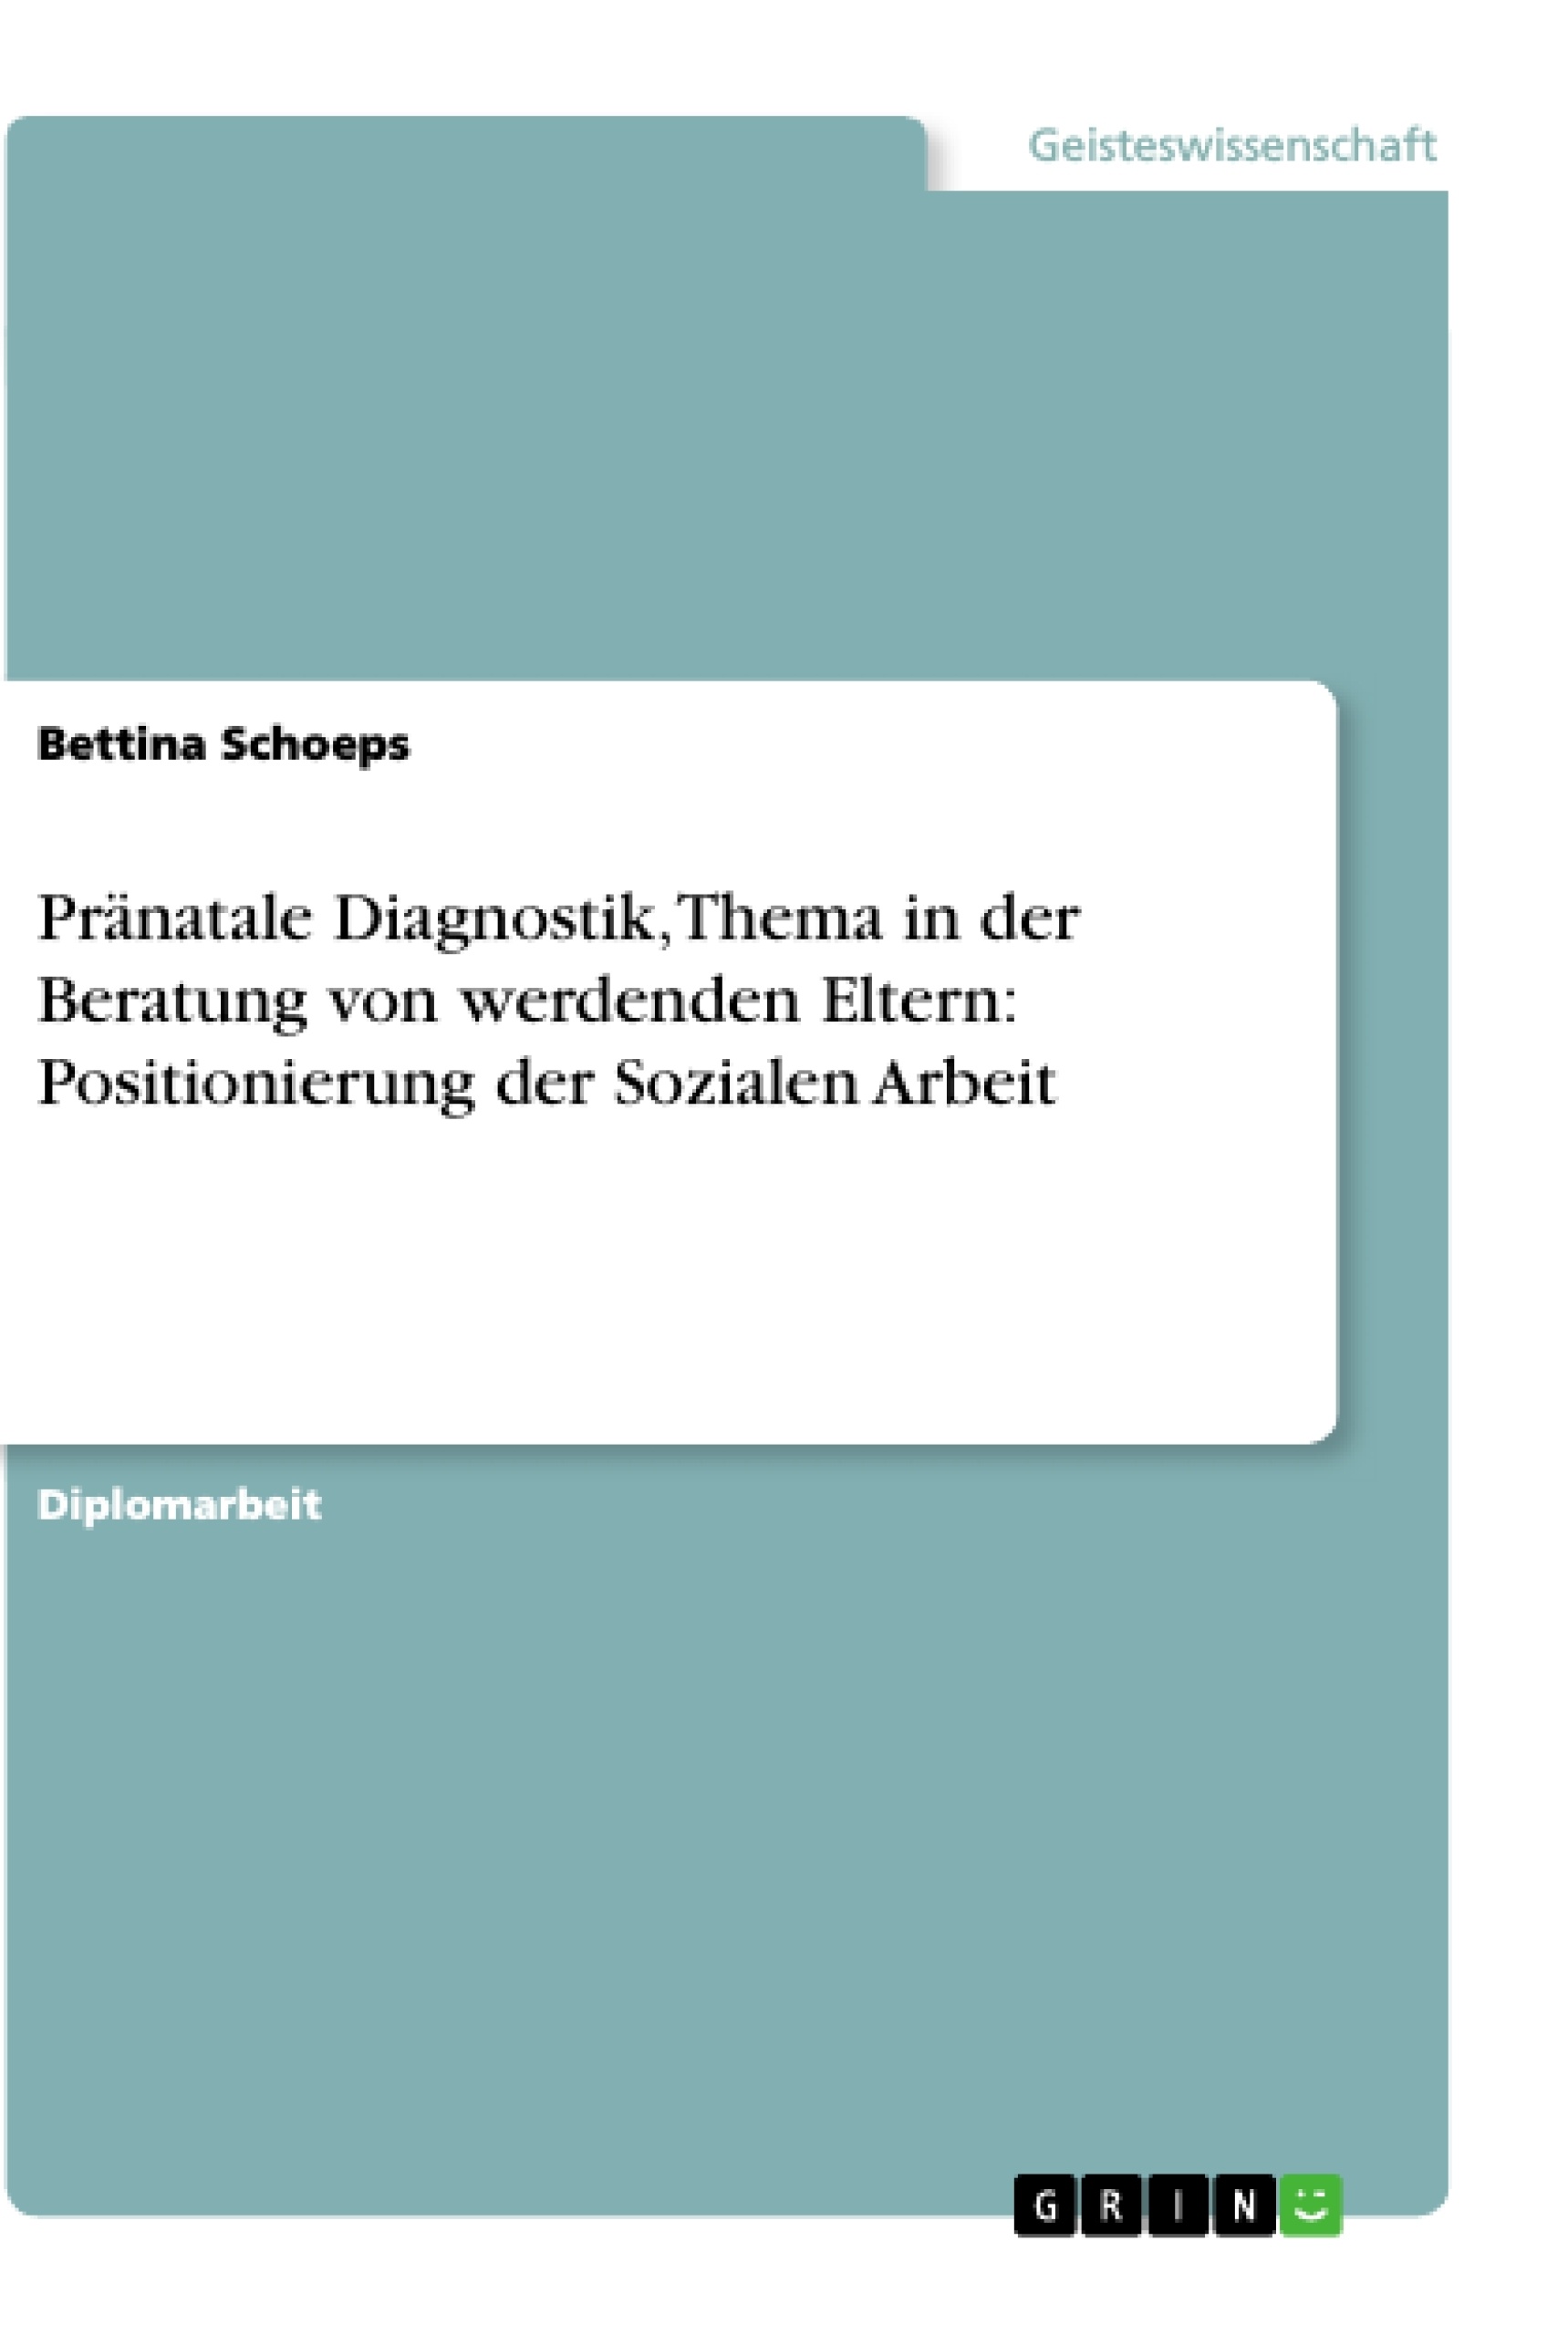 Title: Pränatale Diagnostik, Thema in der Beratung von werdenden Eltern: Positionierung der Sozialen Arbeit